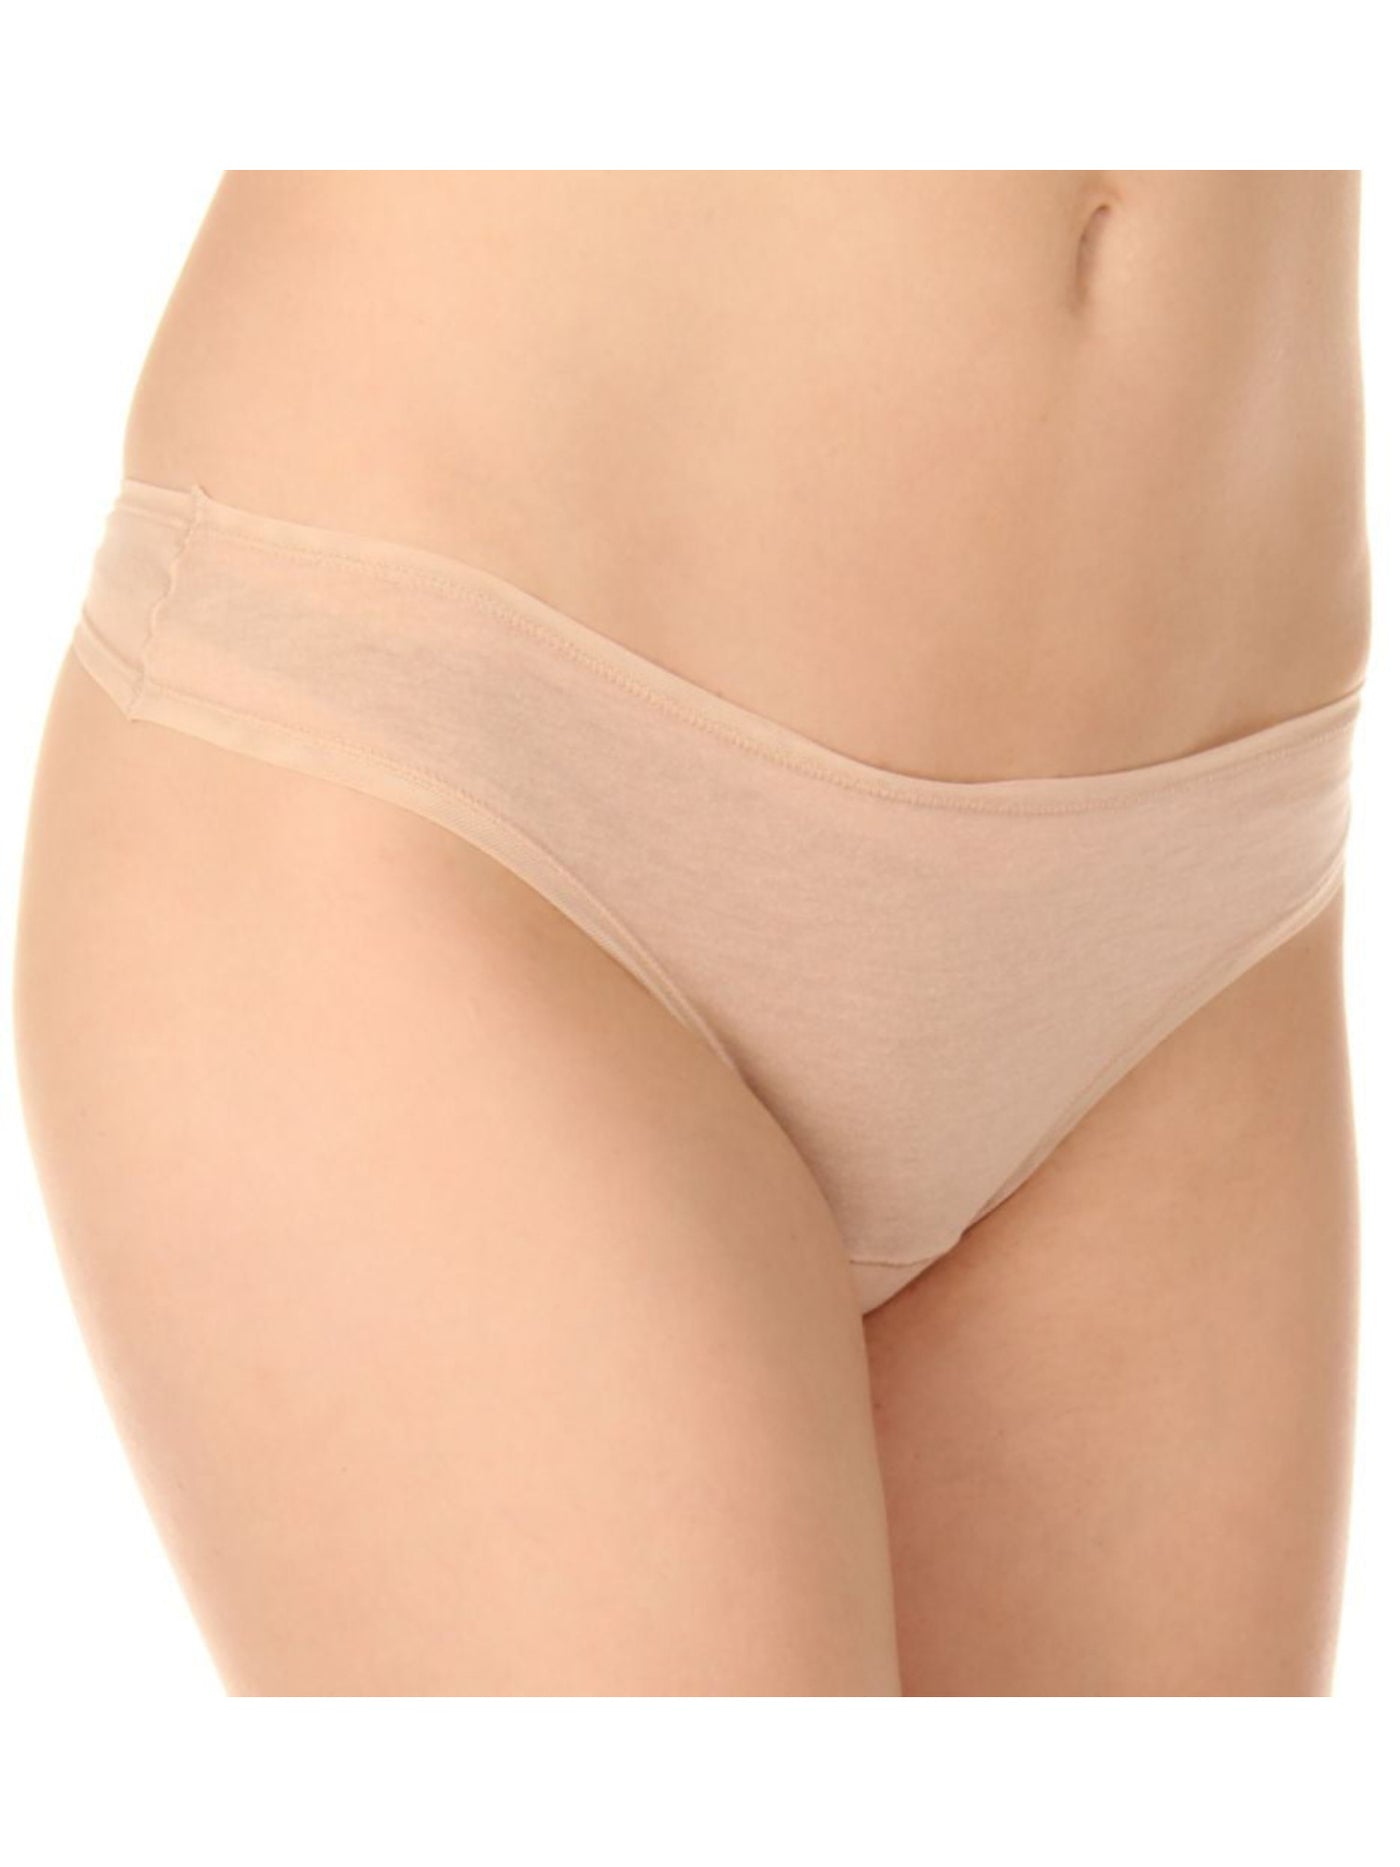 FINE LINES Intimates Beige Thong Underwear L